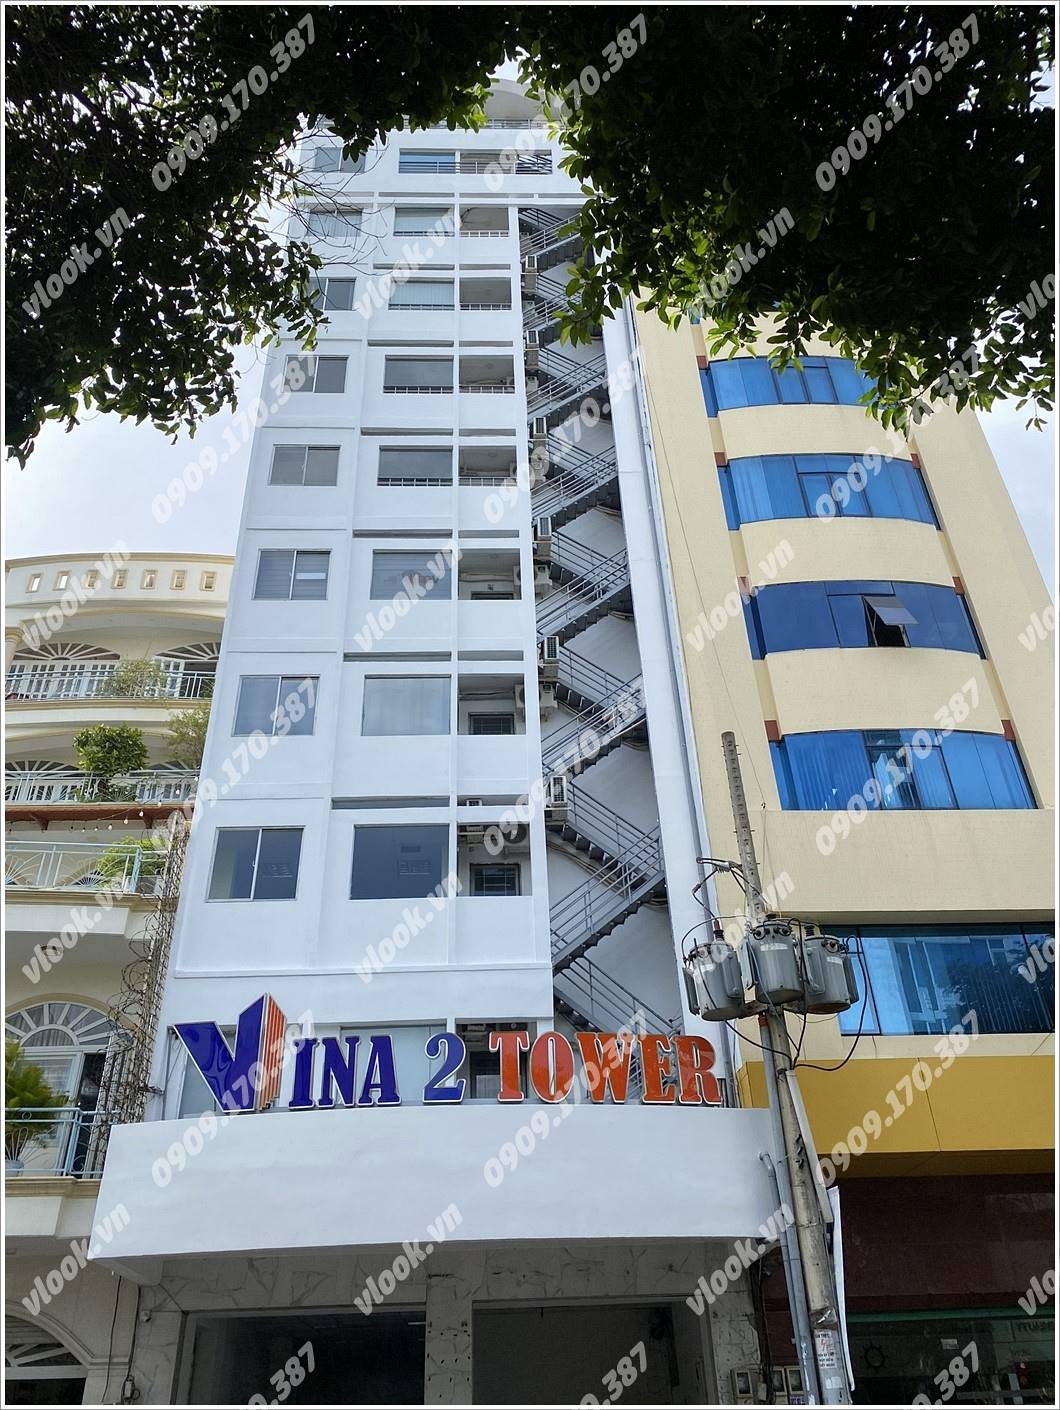 Cao ốc cho thuê văn phòng Vina 2 Tower, Điện Biên Phủ, Quận 3 - vlook.vn